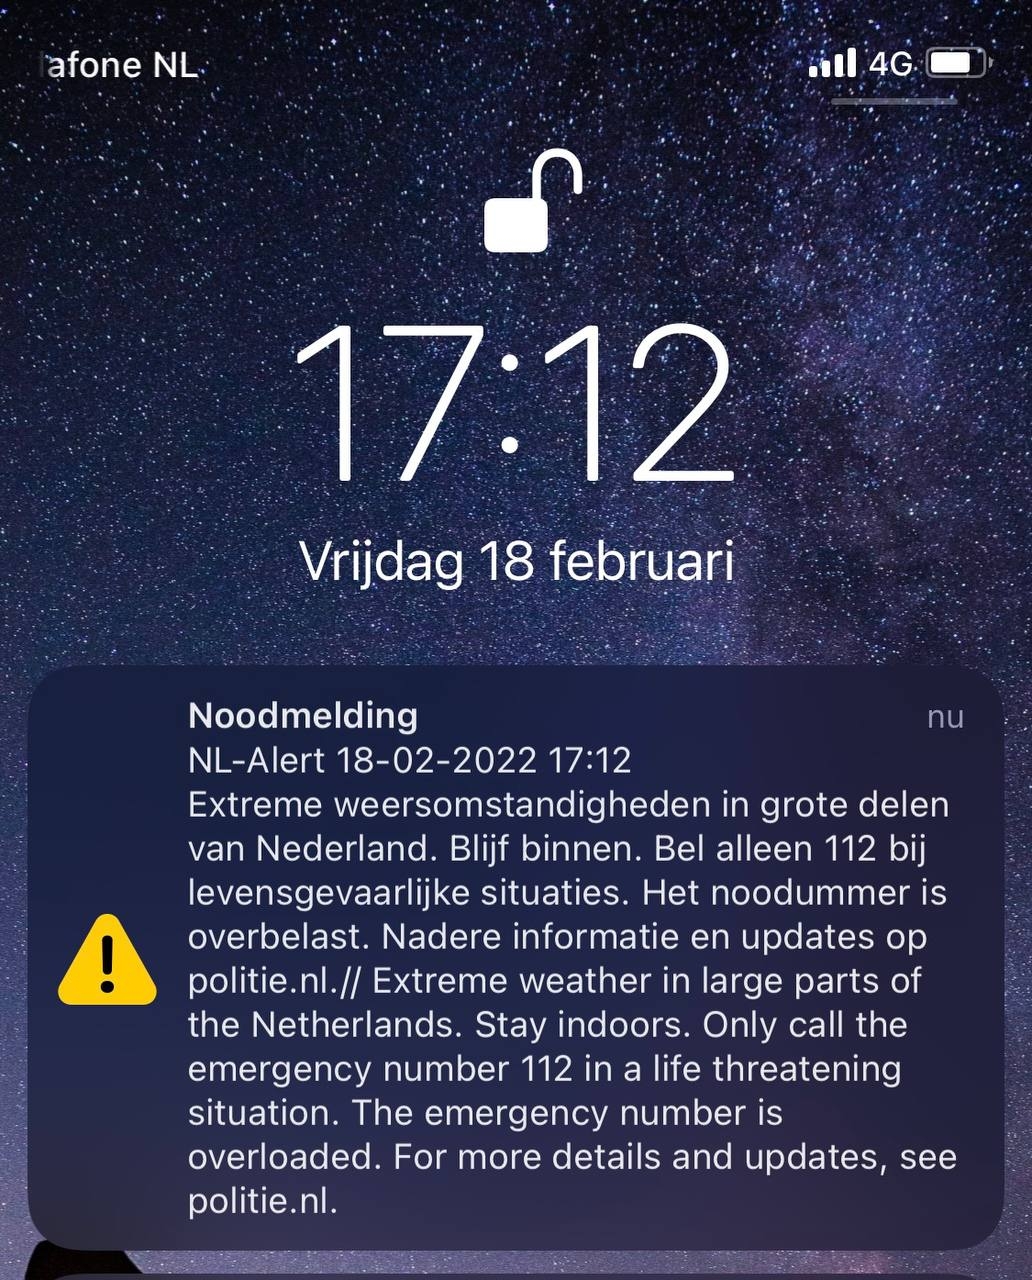 NL-Alert verzonden: noodnummer overbelast